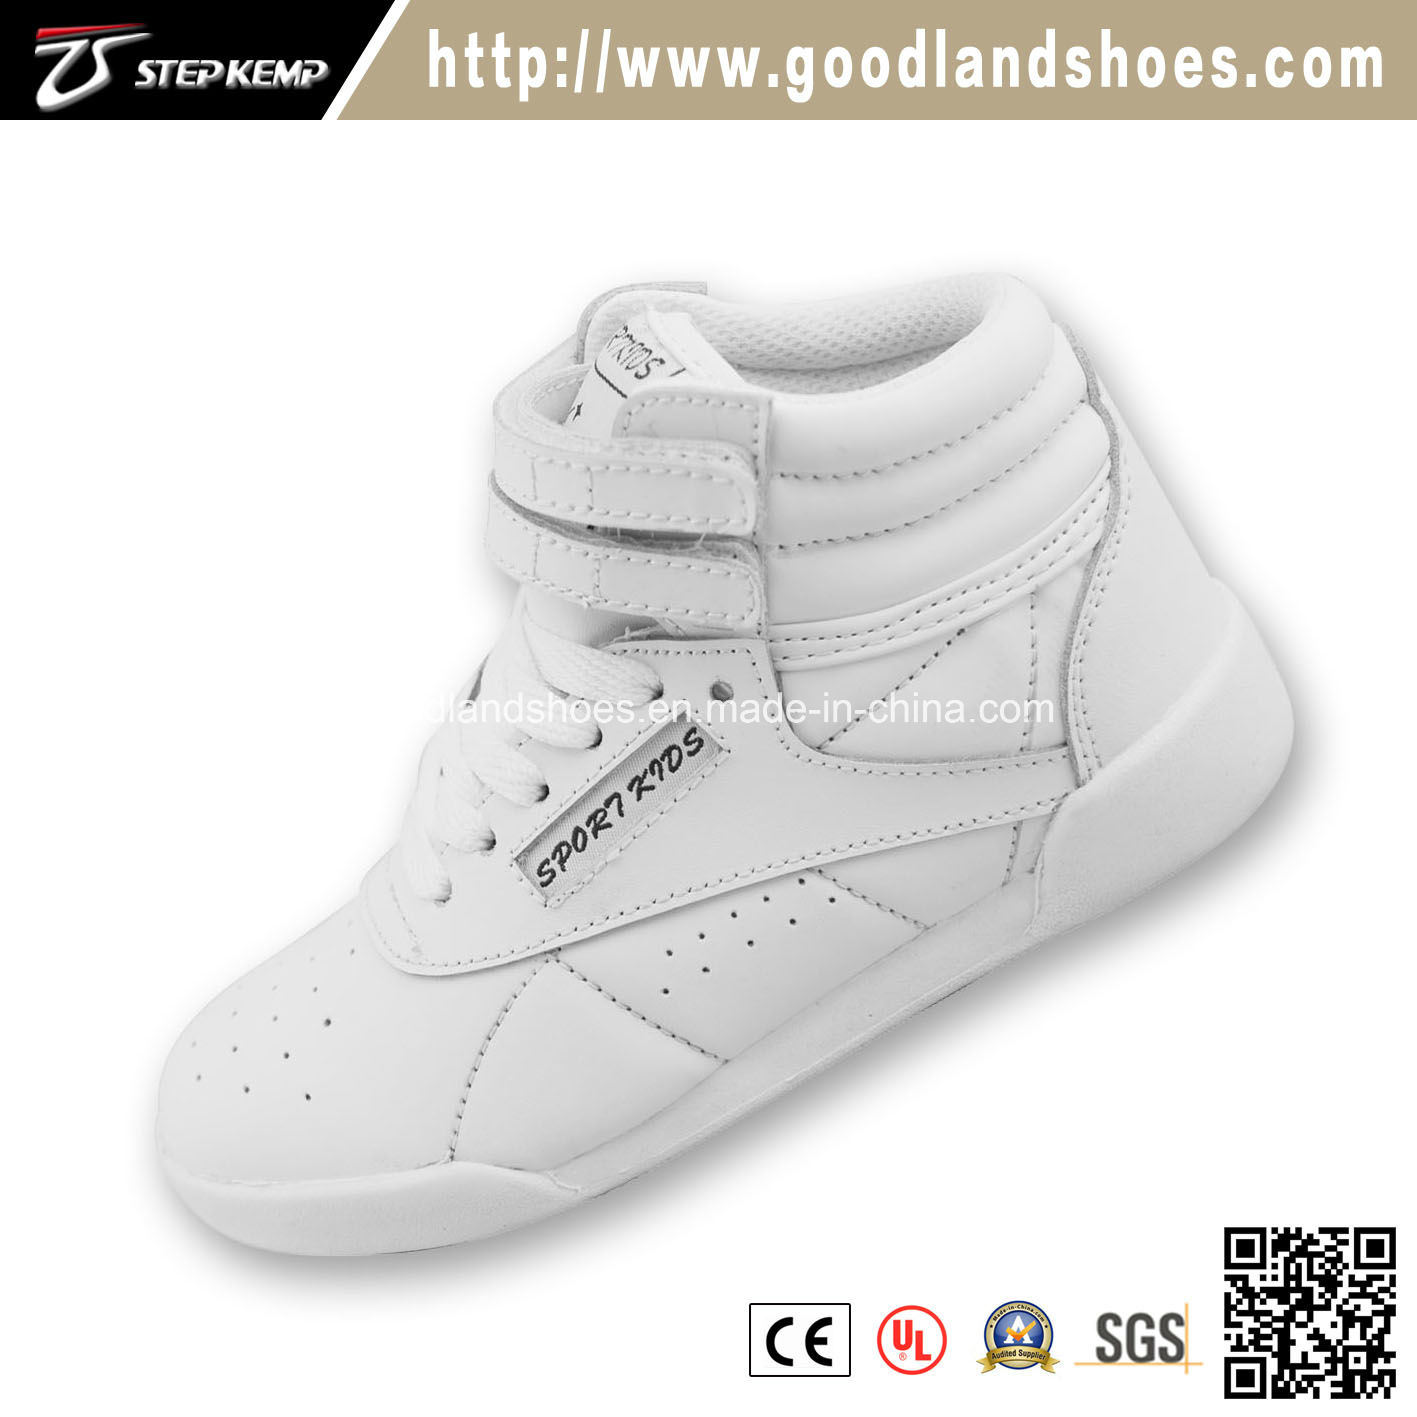 High Quality White & Leather Chlirldren Skate Shoes 16024-1